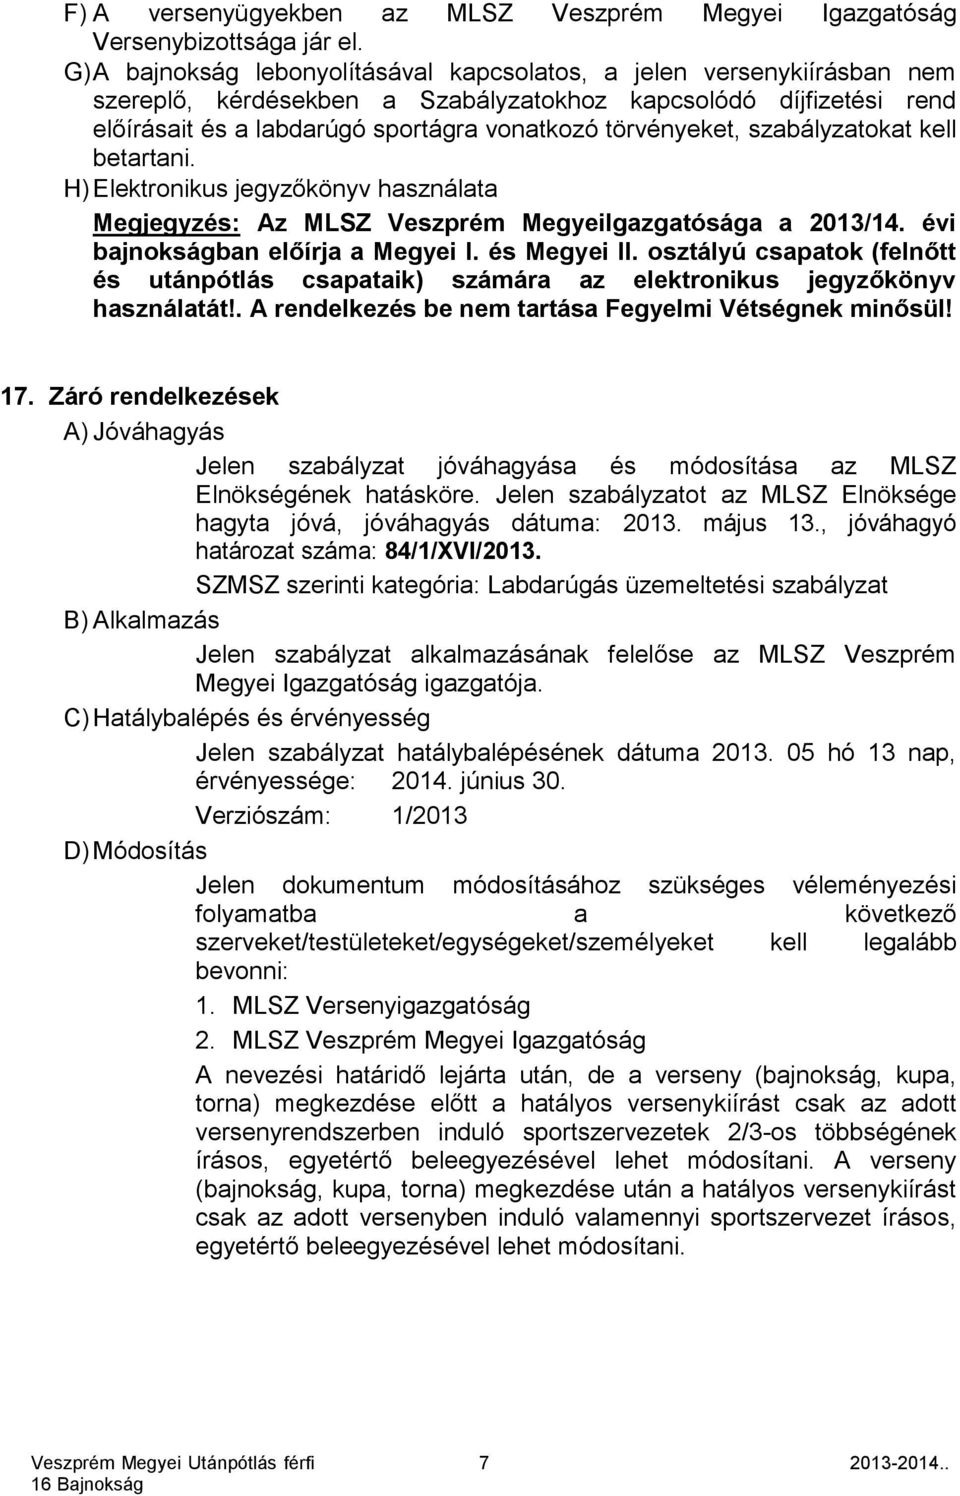 törvényeket, szabályzatokat kell betartani. H) Elektronikus jegyzőkönyv használata Megjegyzés: Az MLSZ Veszprém MegyeiIgazgatósága a 2013/14. évi bajnokságban előírja a Megyei I. és Megyei II.